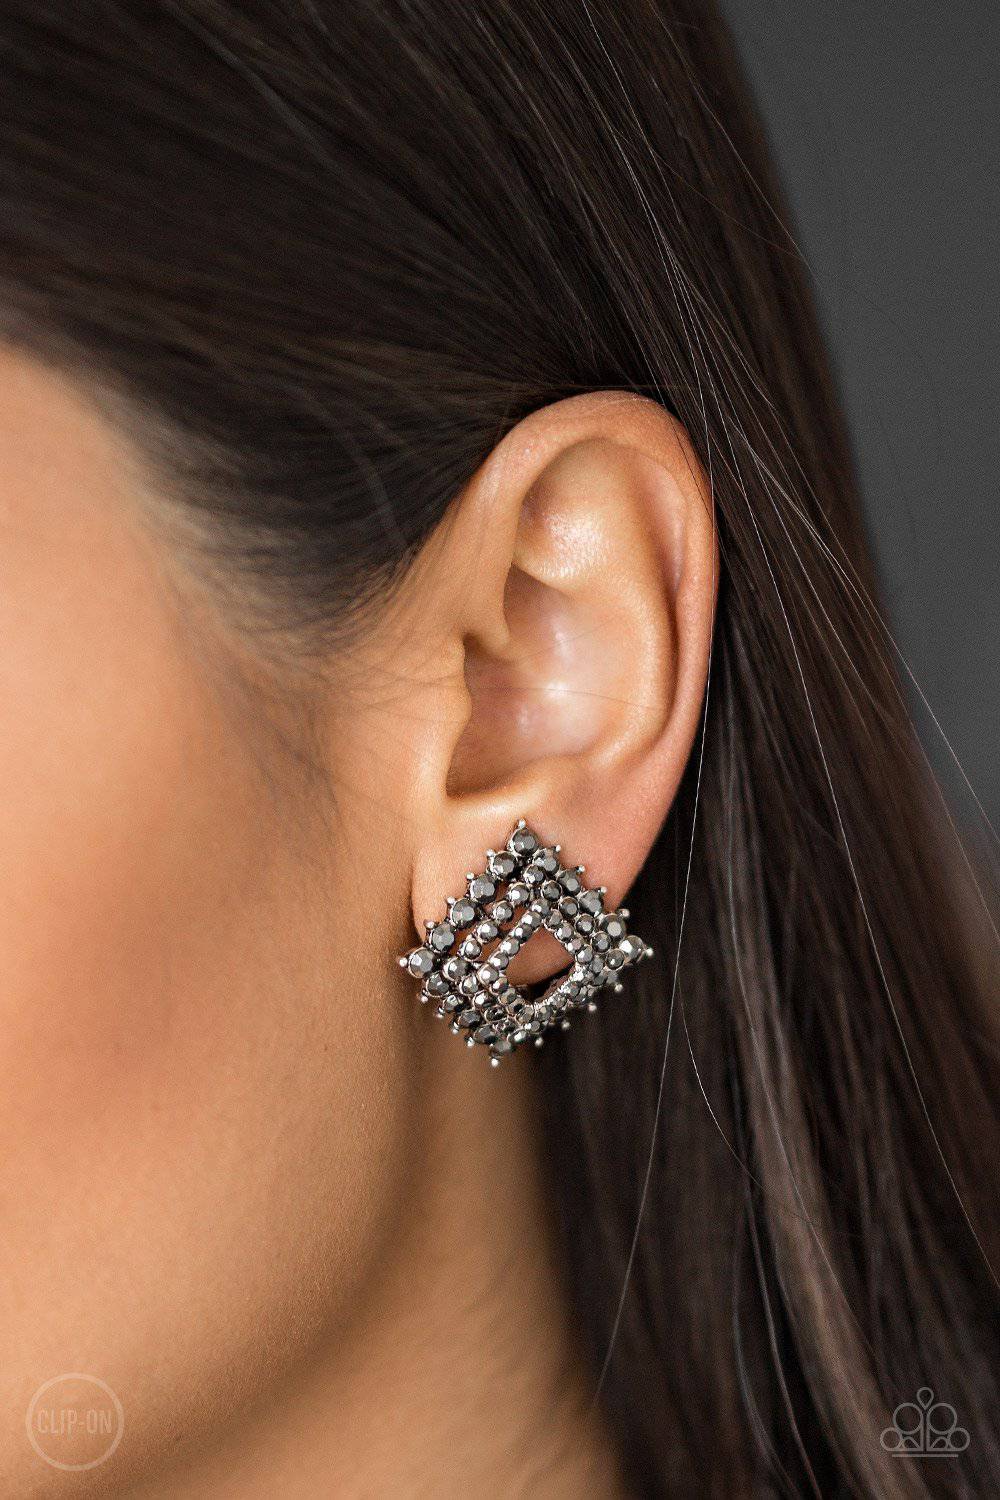 D13 - Kensington Keepsake Silver Clip-On Earrings by Paparazzi Accessories on Fancy5Fashion.com